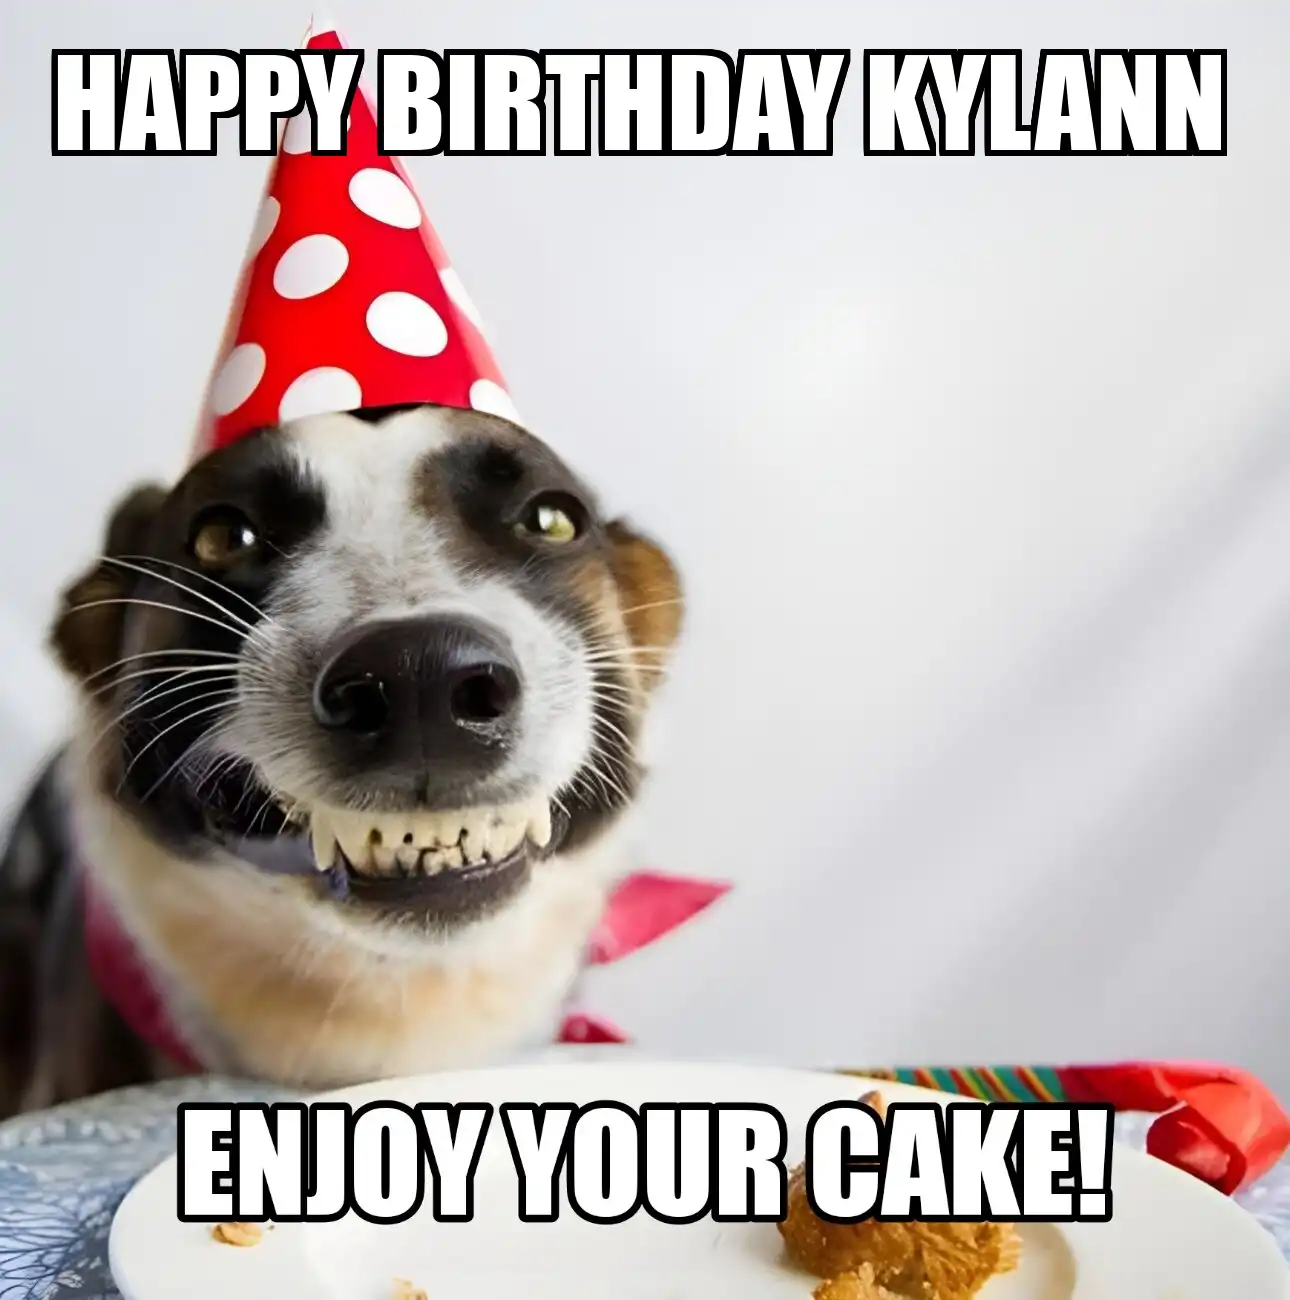 Happy Birthday Kylann Enjoy Your Cake Dog Meme